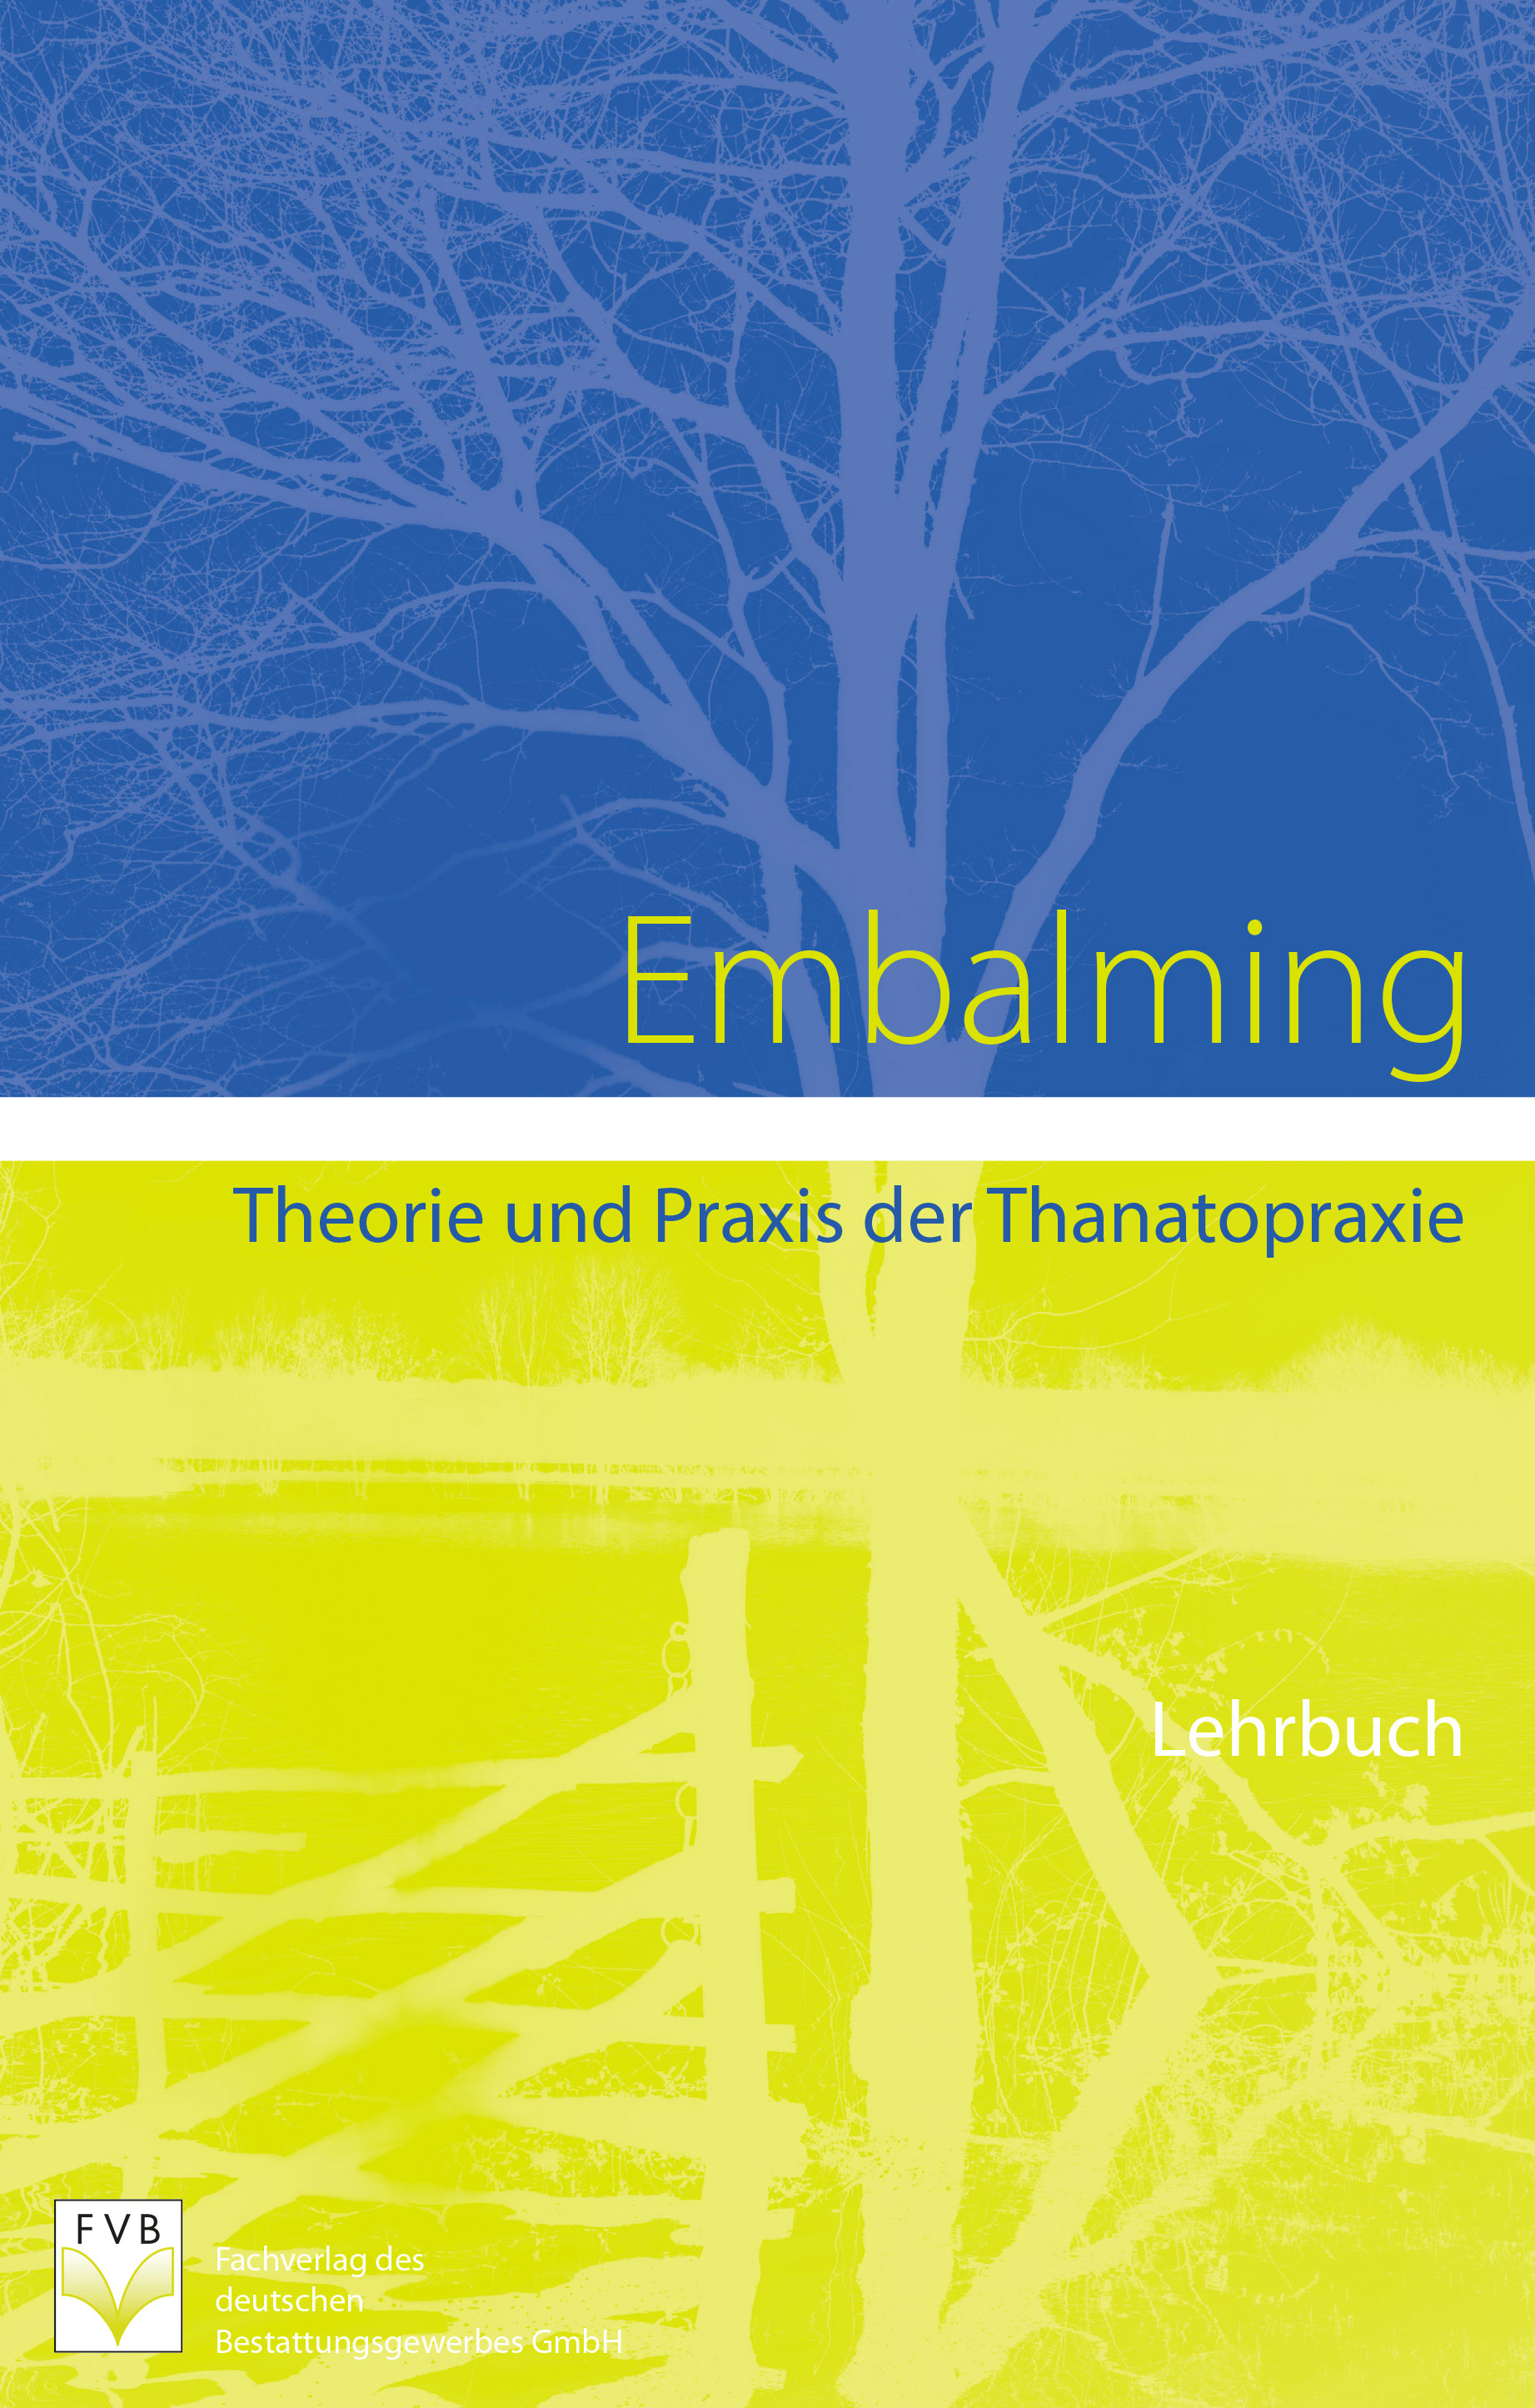 Embalming Theorie und Praxis der Thanatopraxie